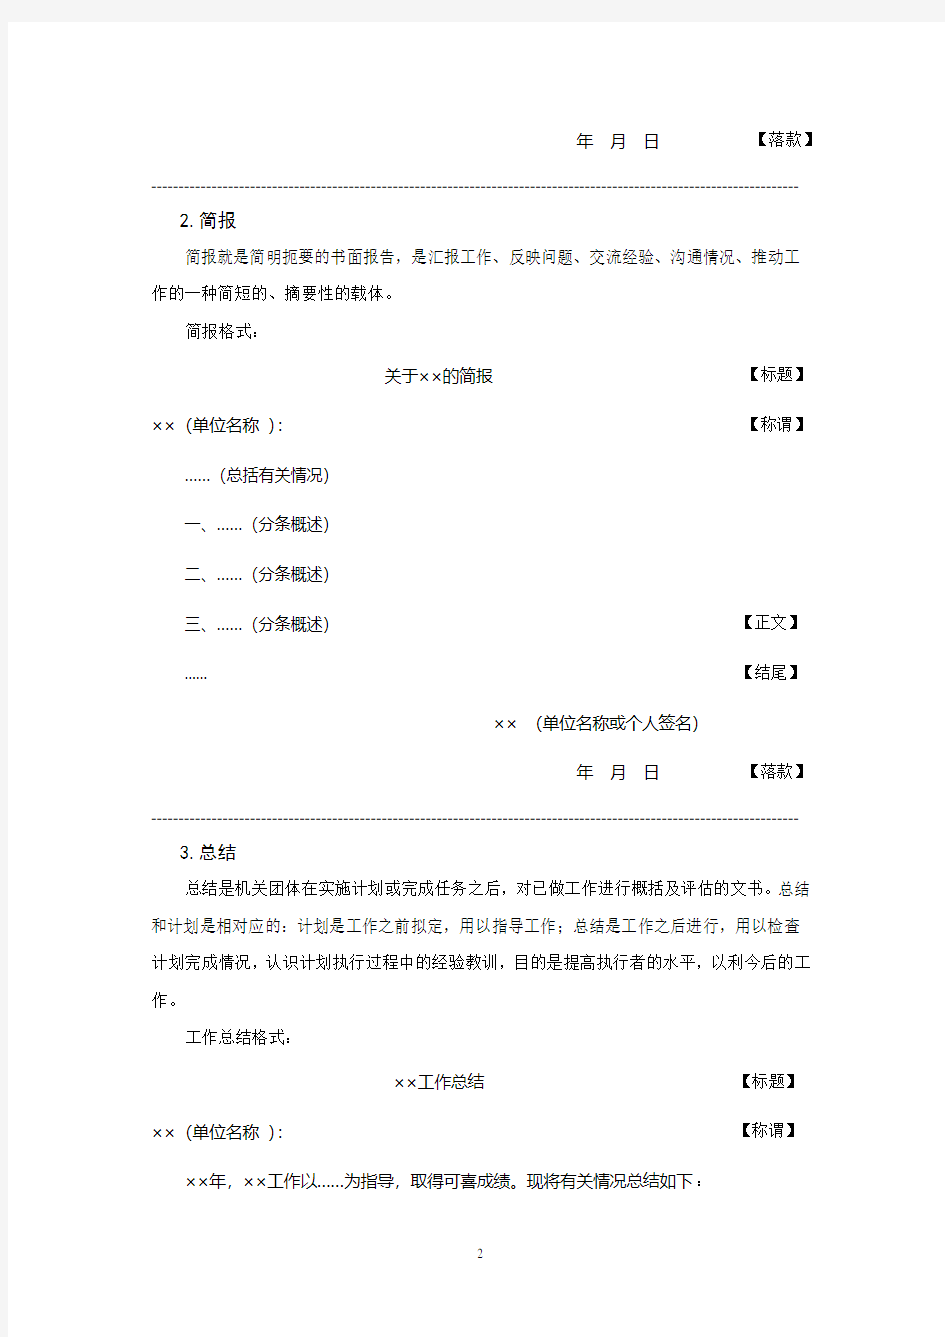 申论公文格式(史上最全)行者(2020年整理).pdf